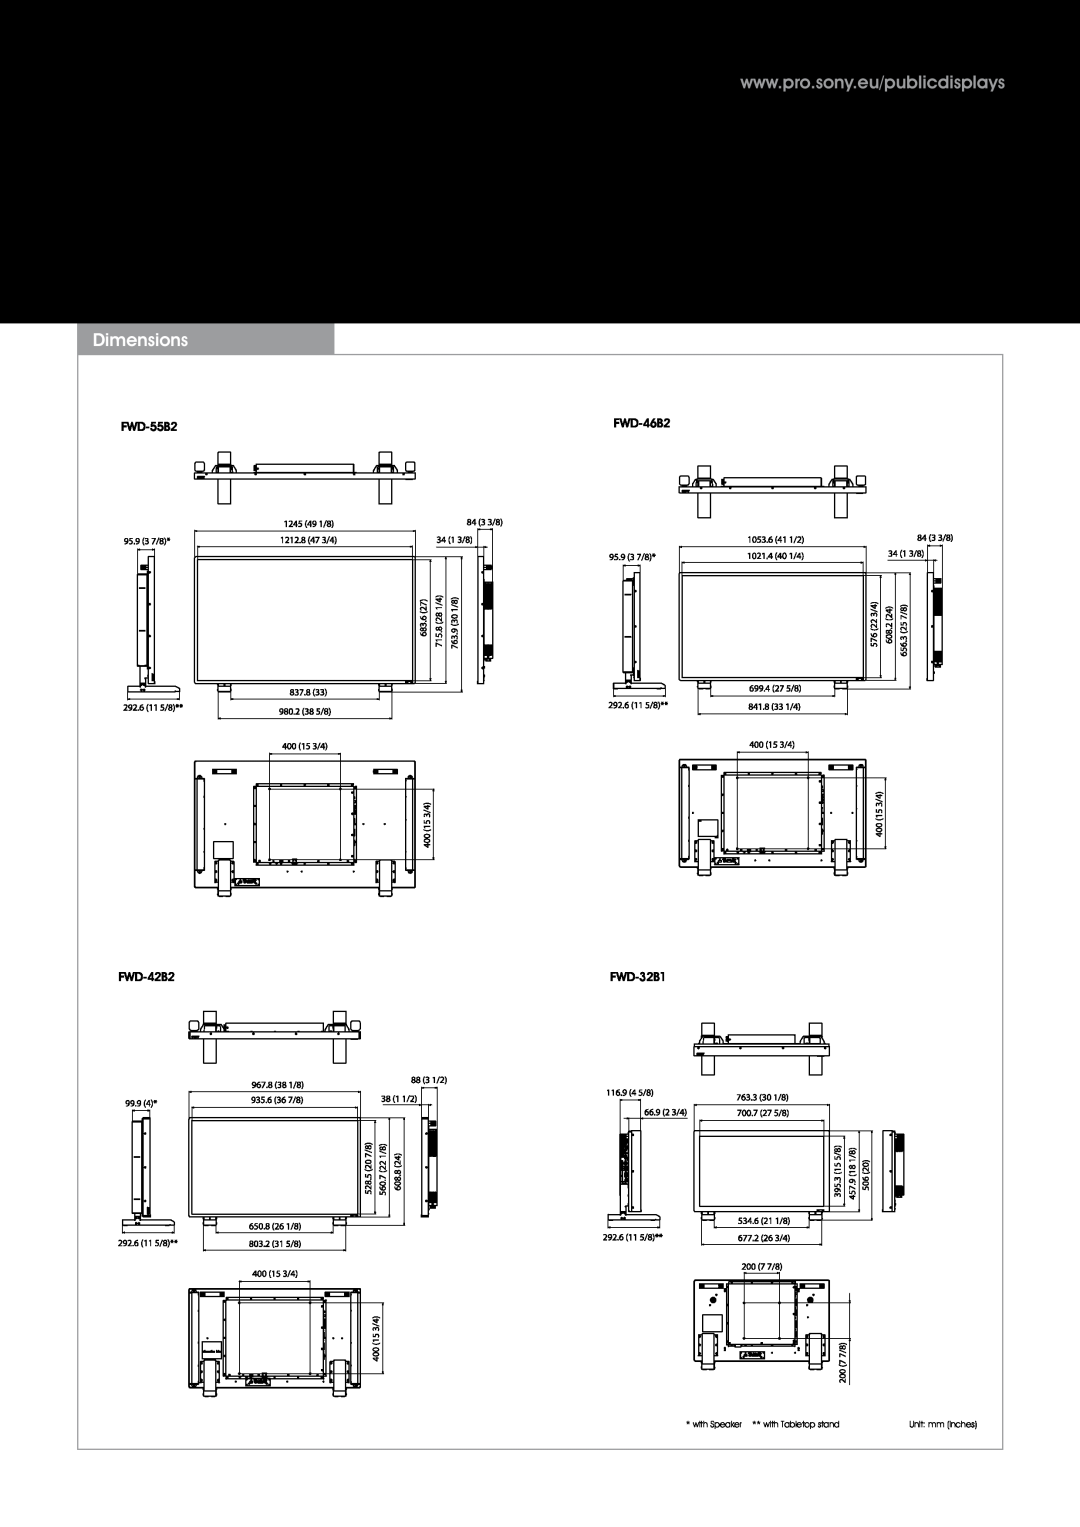 Sony FWD46B2TOUCH warranty Dimensions, FWD-55B2, FWD-46B2, FWD-42B2, FWD-32B1 